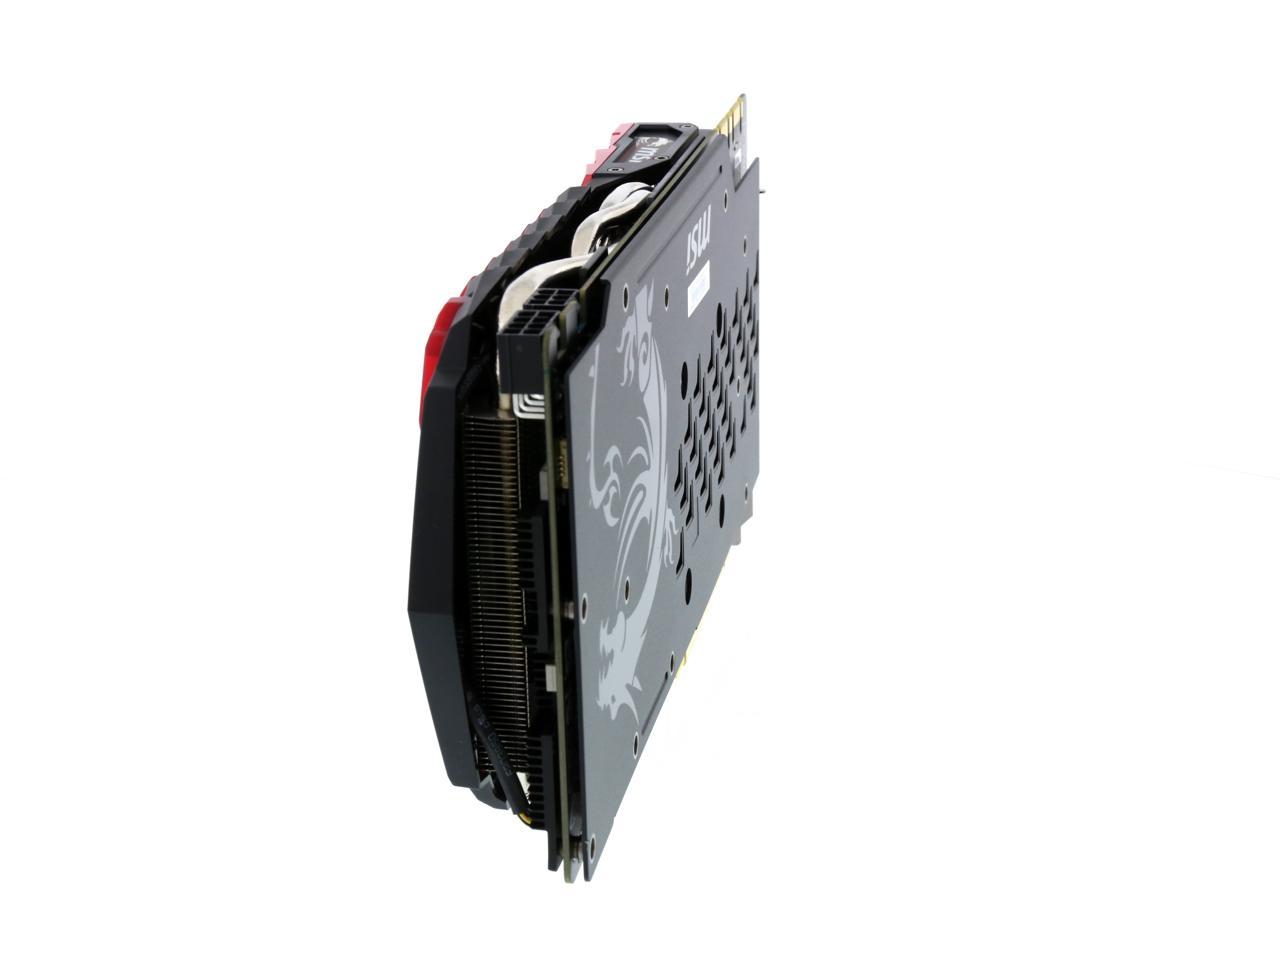 MSI GeForce GTX 1080 8GB GDDR5X PCI Express 3.0 x16 SLI Support ATX Video  Card GTX 1080 GAMING X 8G